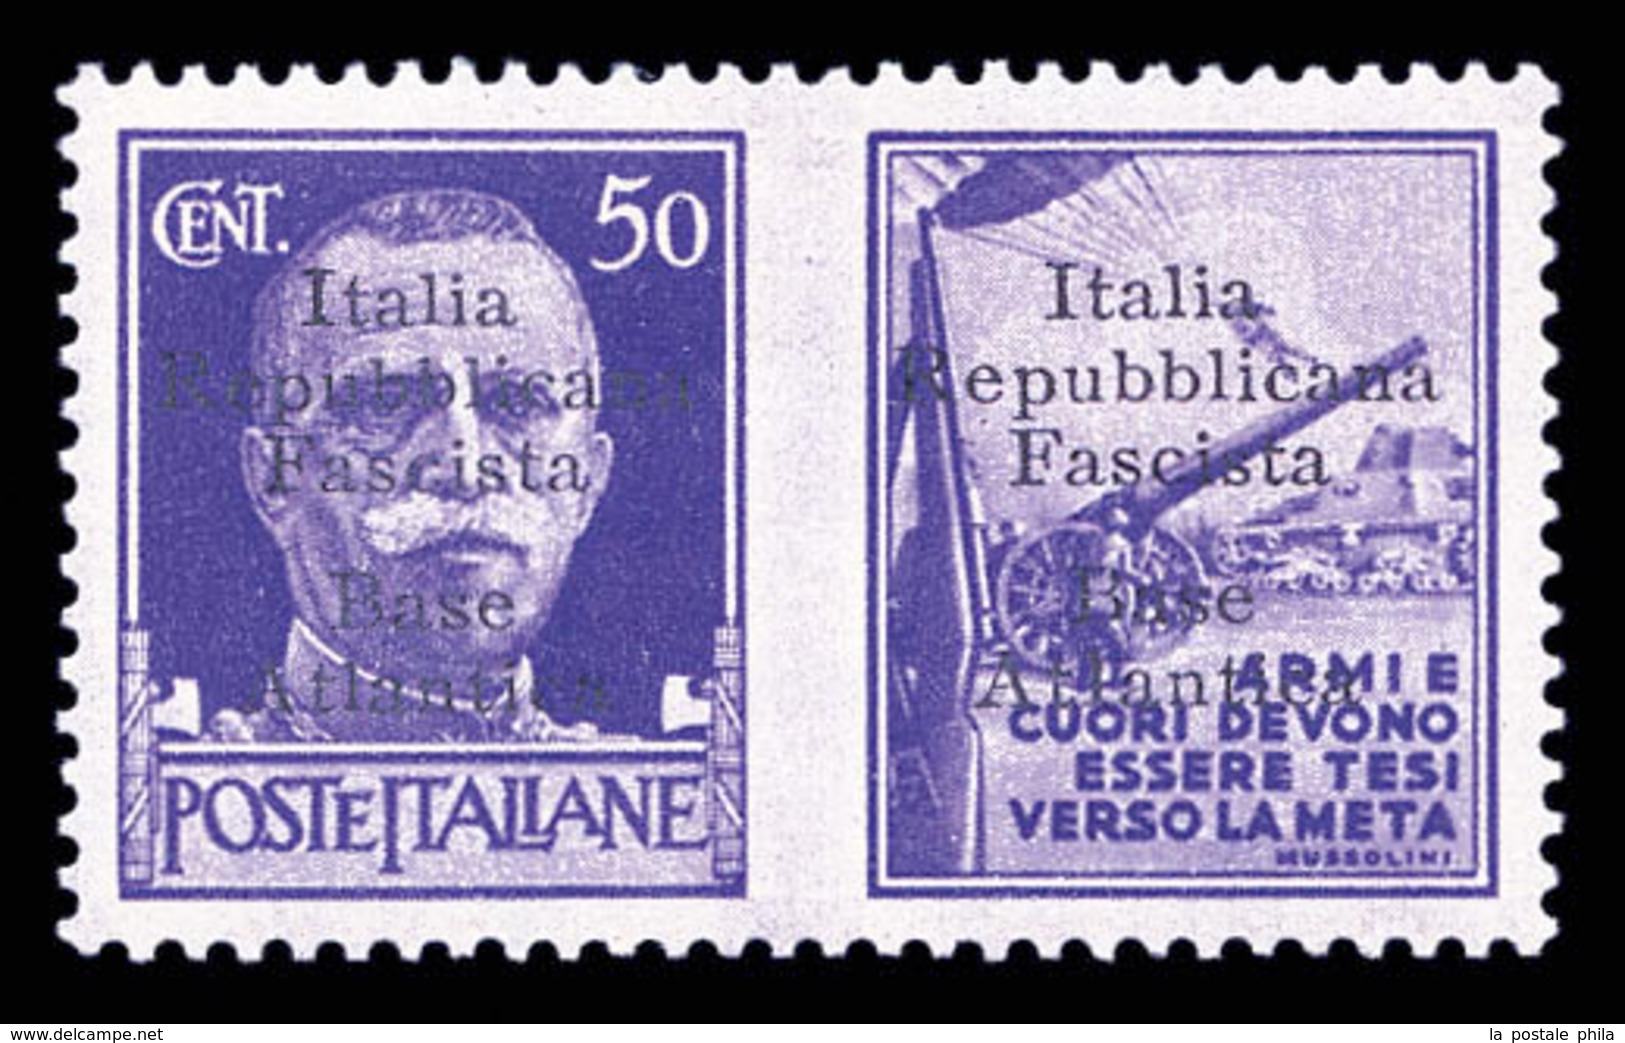 ** N°11A, (N° Maury), Timbre De Propagande 50c Violet Avec Vignette 'Artillerie'. SUPERBE. R.R.R (signé Scheller/Diena/c - War Stamps